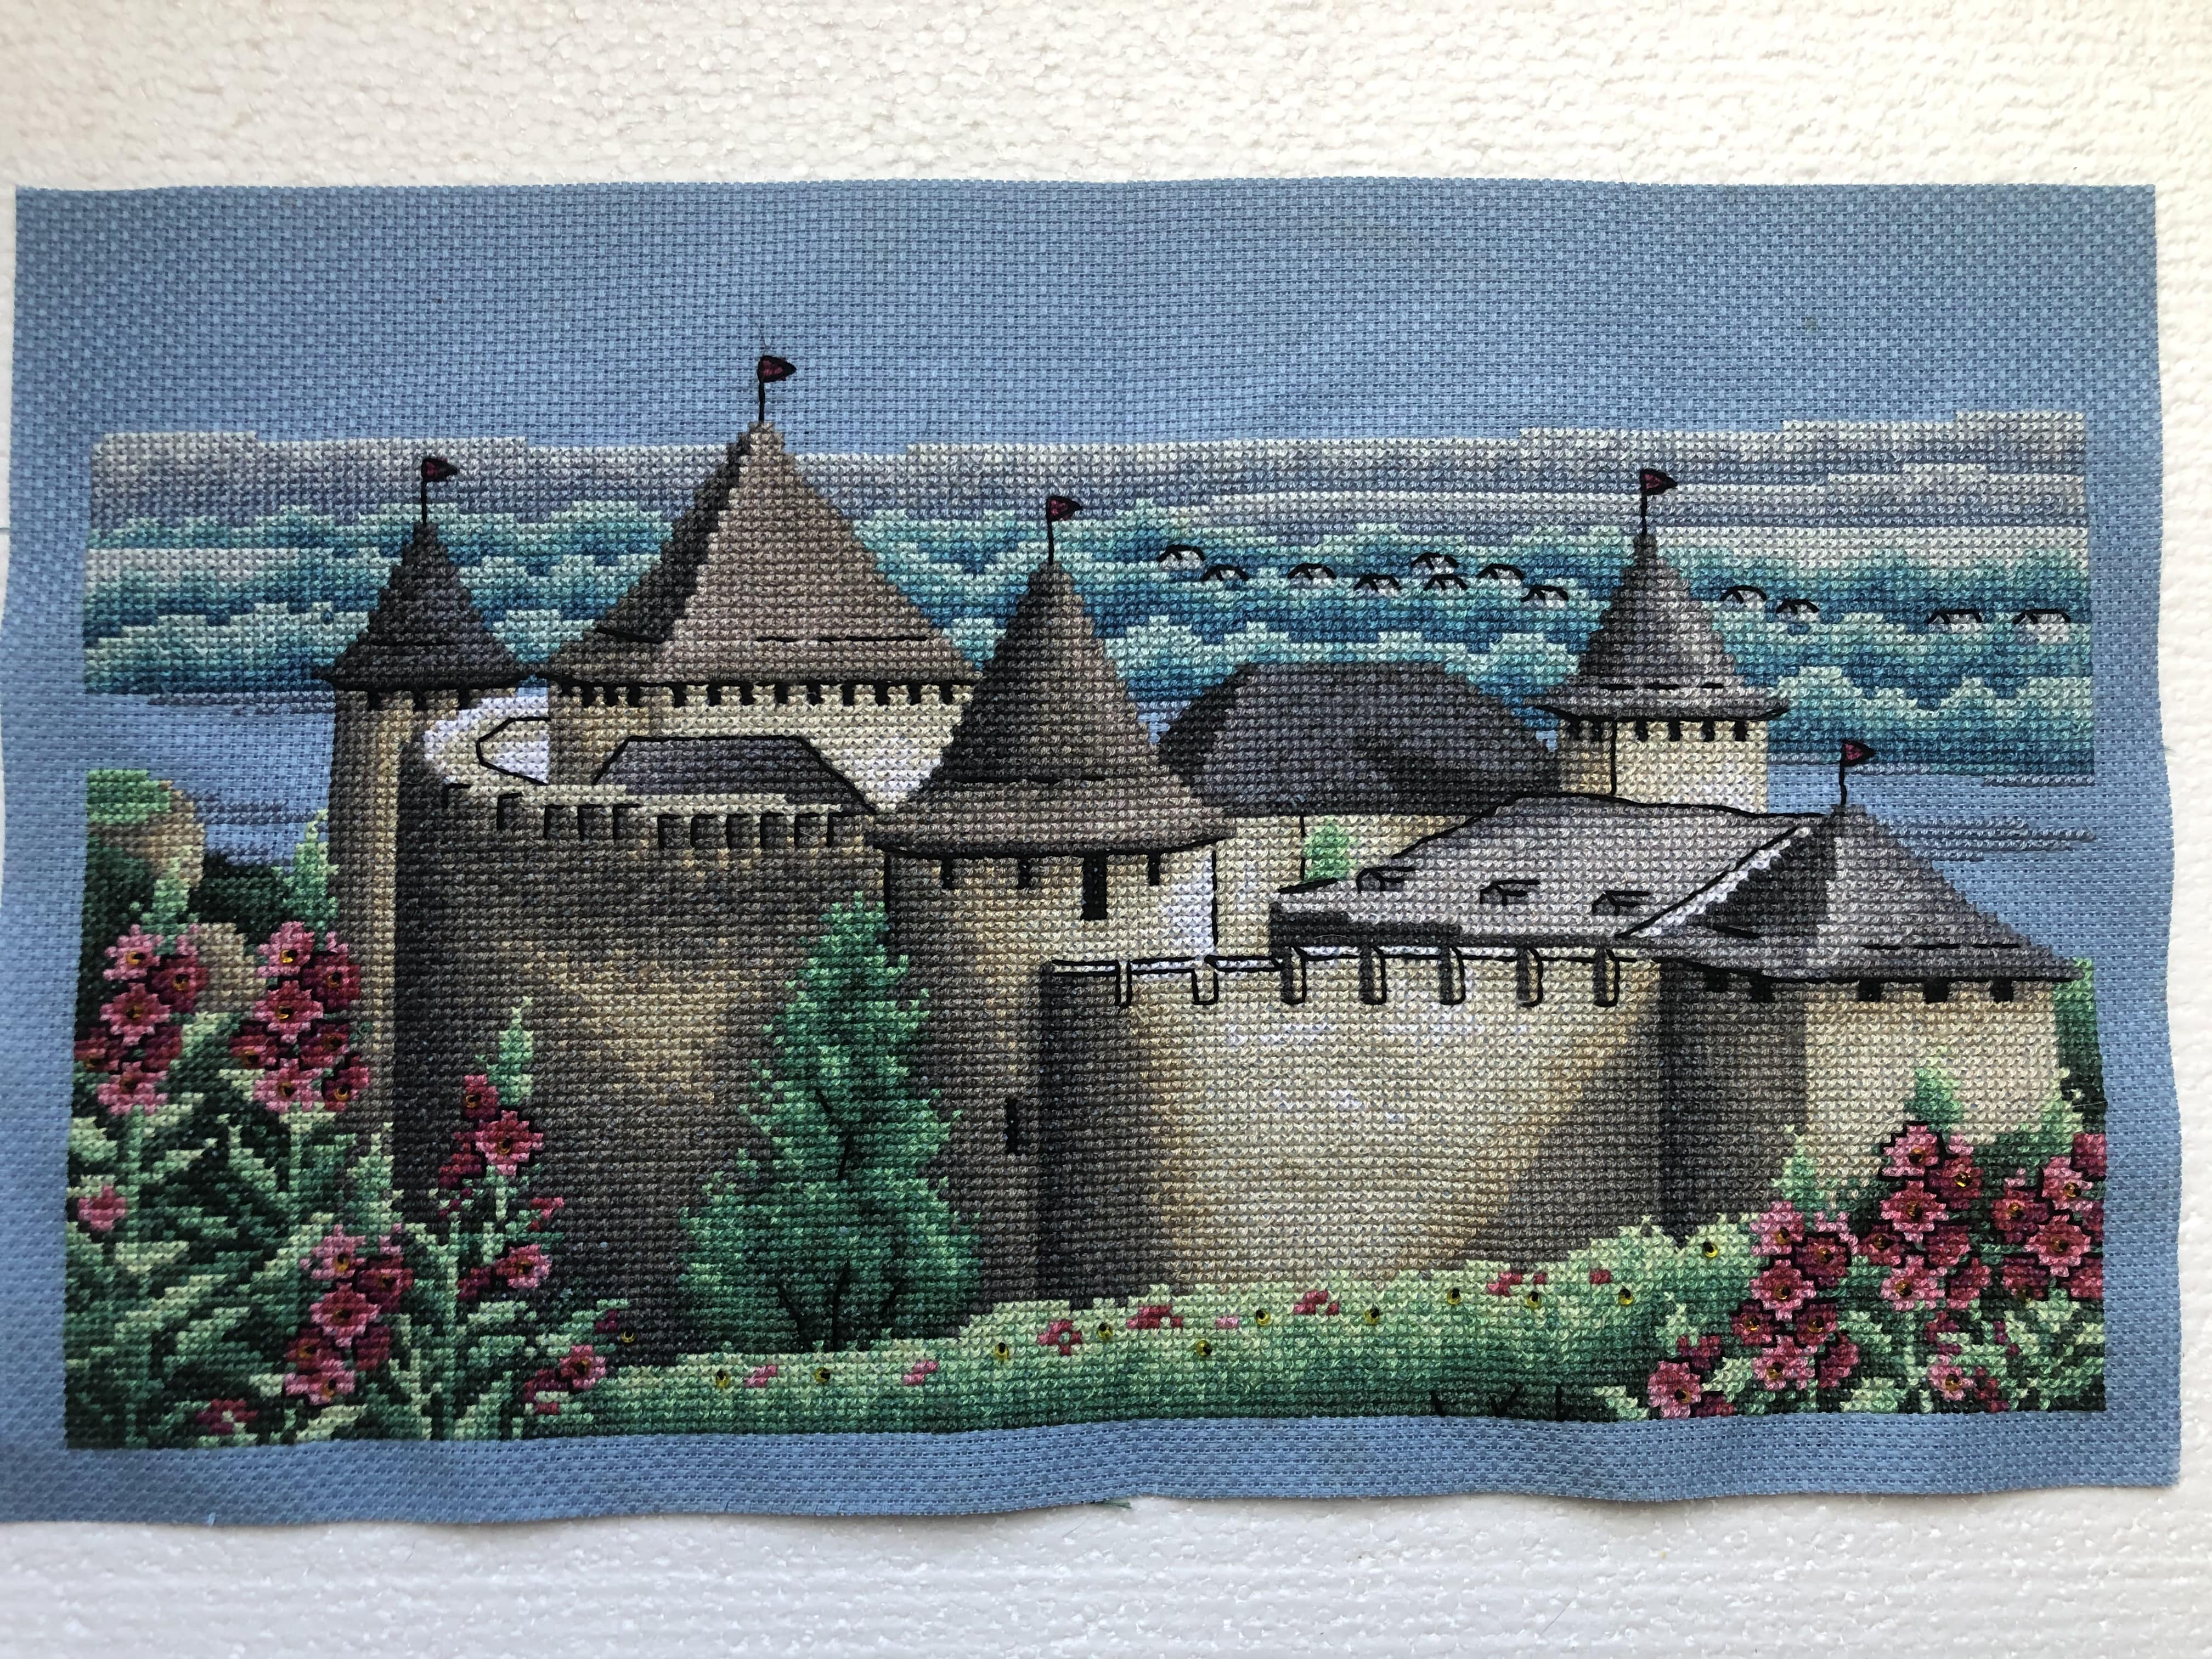 ЗПП-025 Замок в Баварии, набор для вышивки бисером картины с замком Нойшванштайн